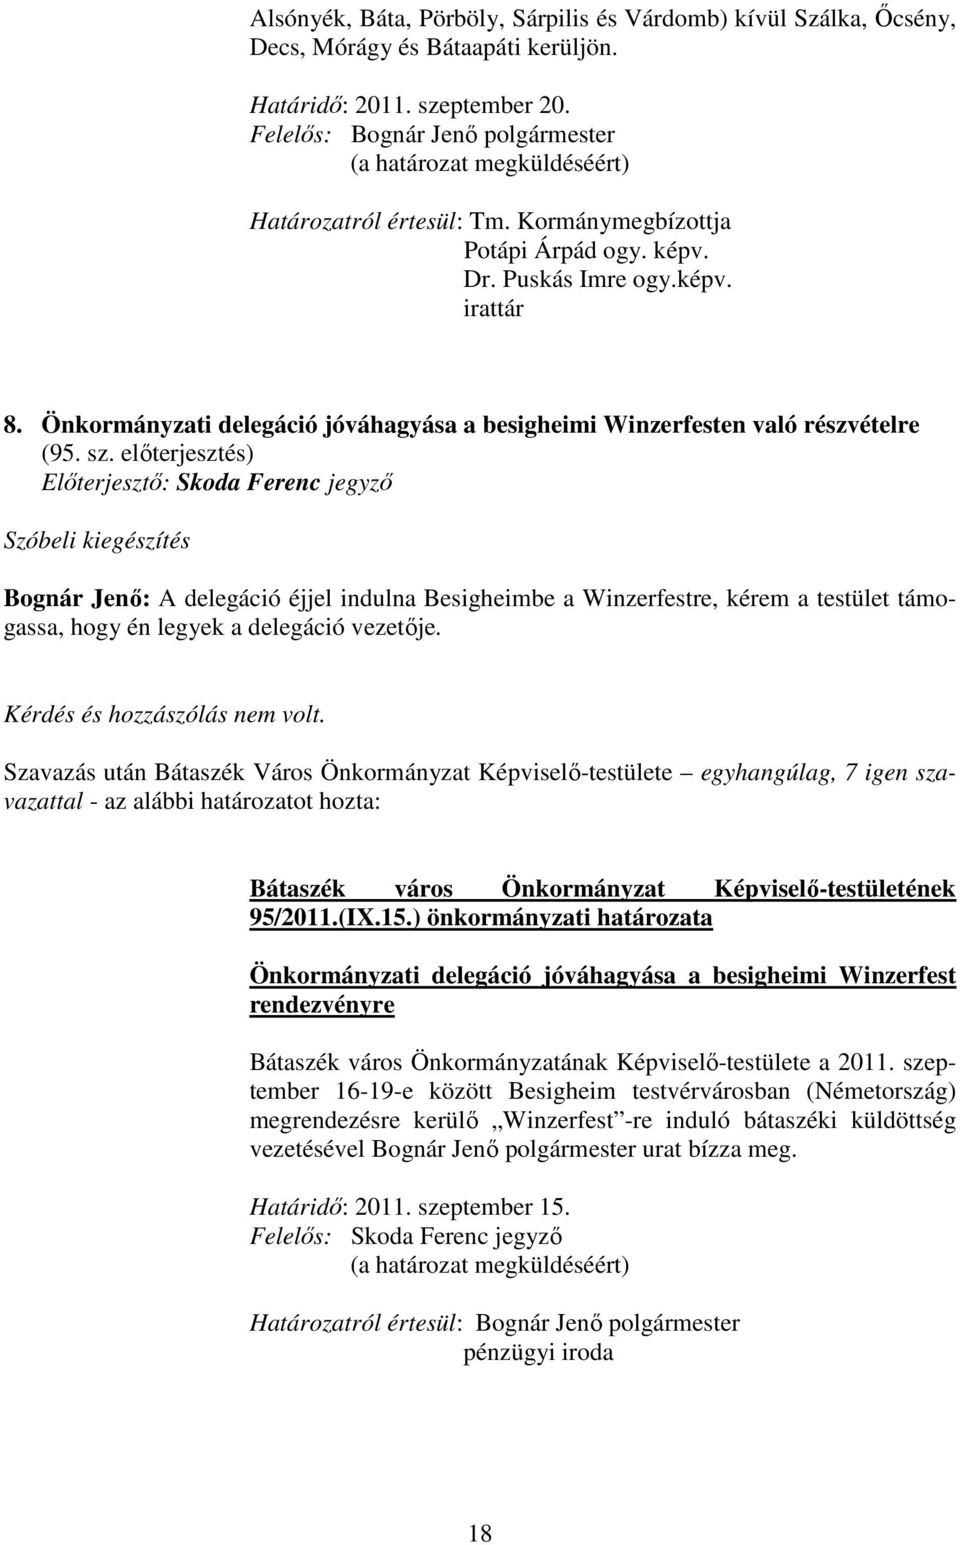 Önkormányzati delegáció jóváhagyása a besigheimi Winzerfesten való részvételre (95. sz.